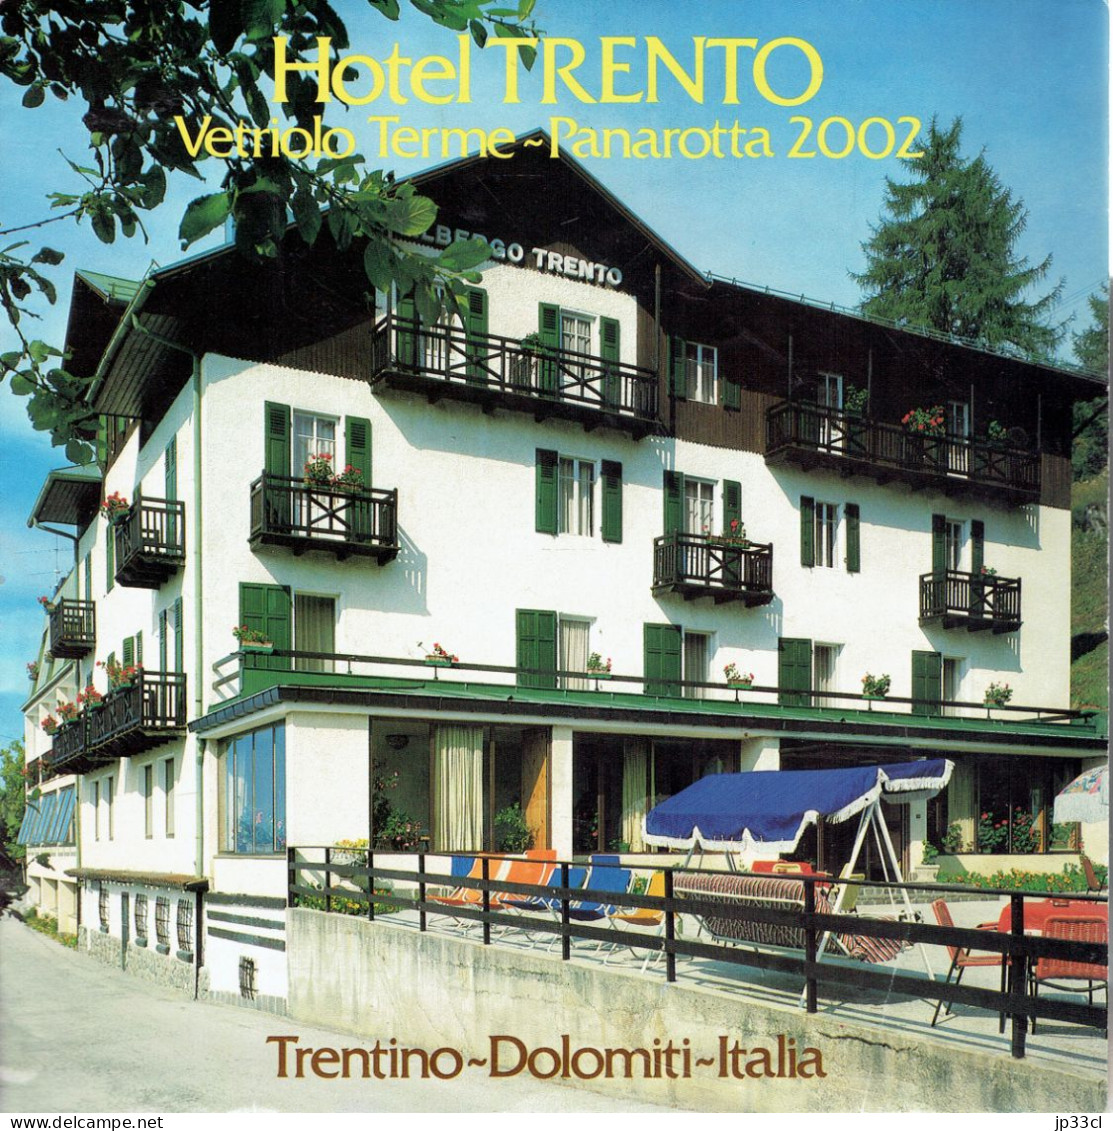 Dépliant Sur L'Hôtel Trento Vetriolo Terme - Panarota 2002, Dolomiti (en Français, Italien, Allemand Et Anglais) - Cuadernillos Turísticos